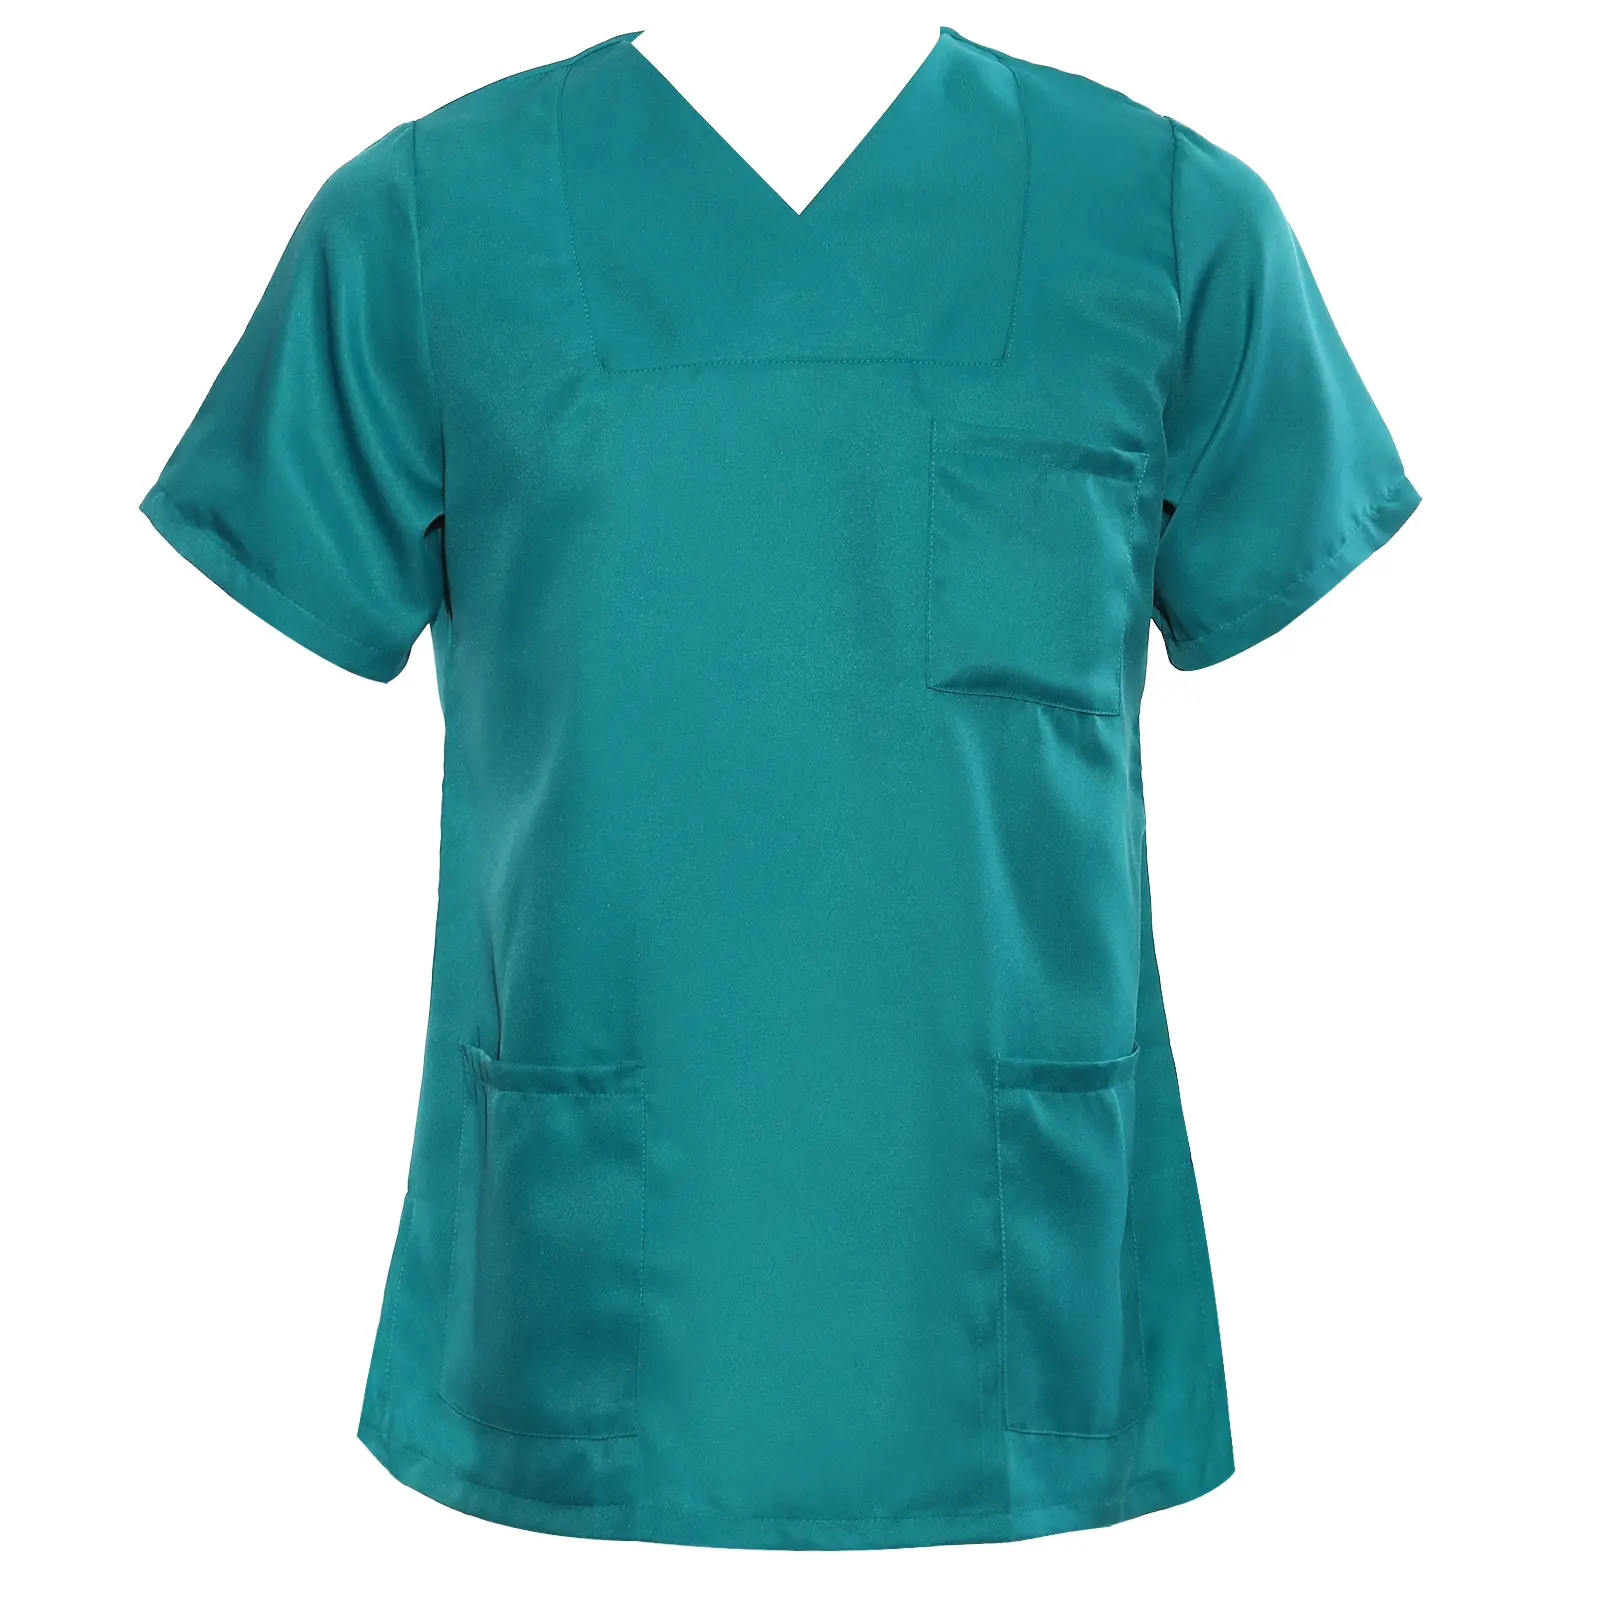 Uniforme cirúrgica masculina e feminina, uniforme cirúrgica para lavar roupas com decote em v